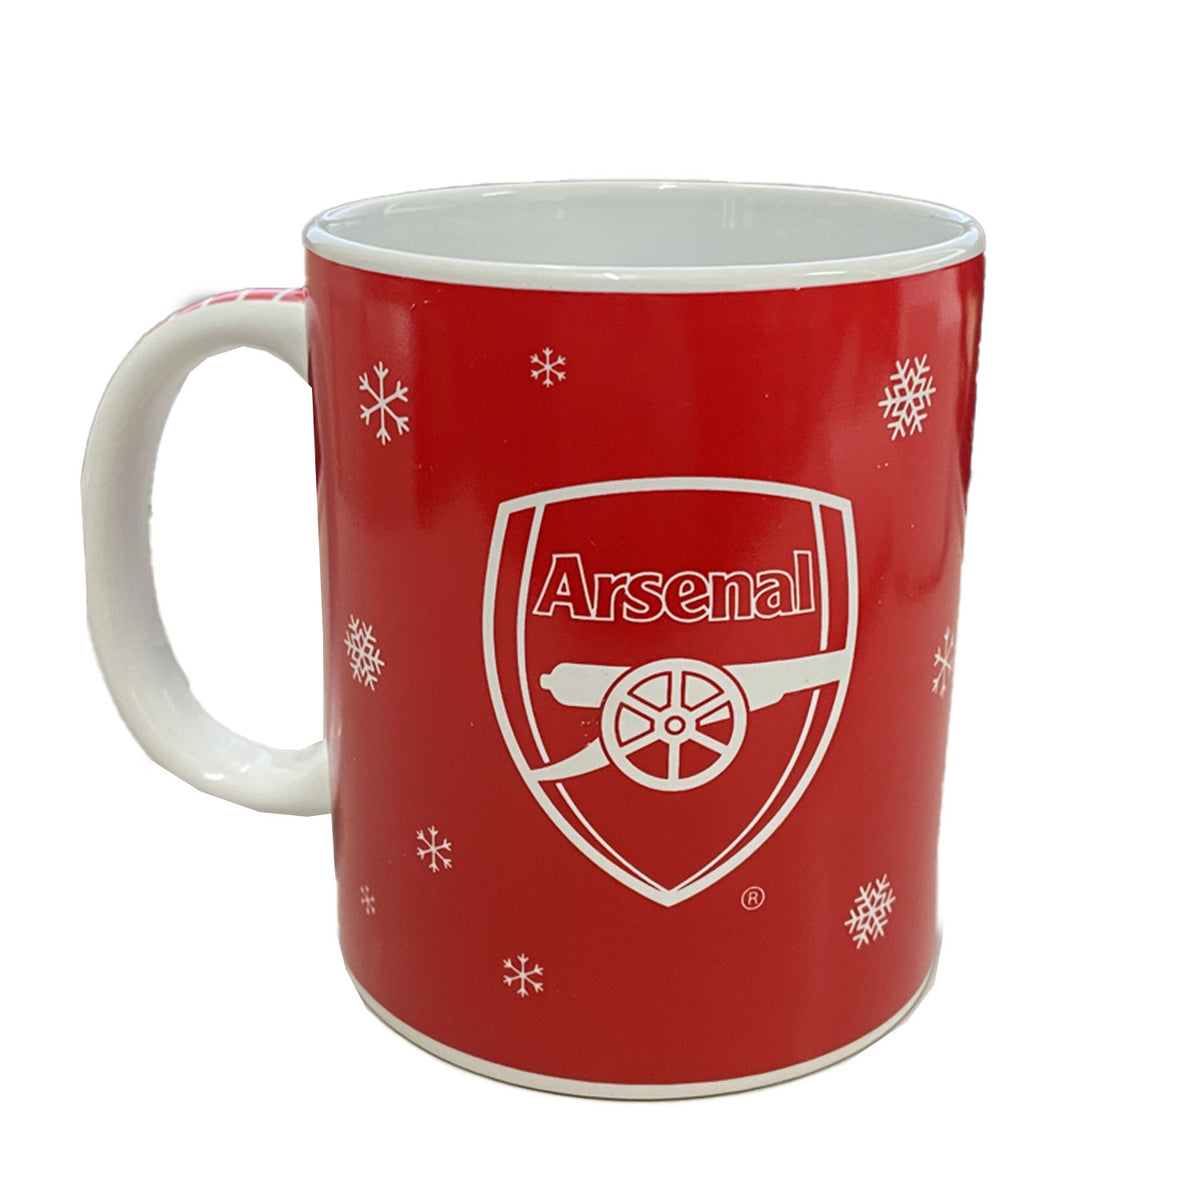 Arsenal F.C Merry Christmas Mug I